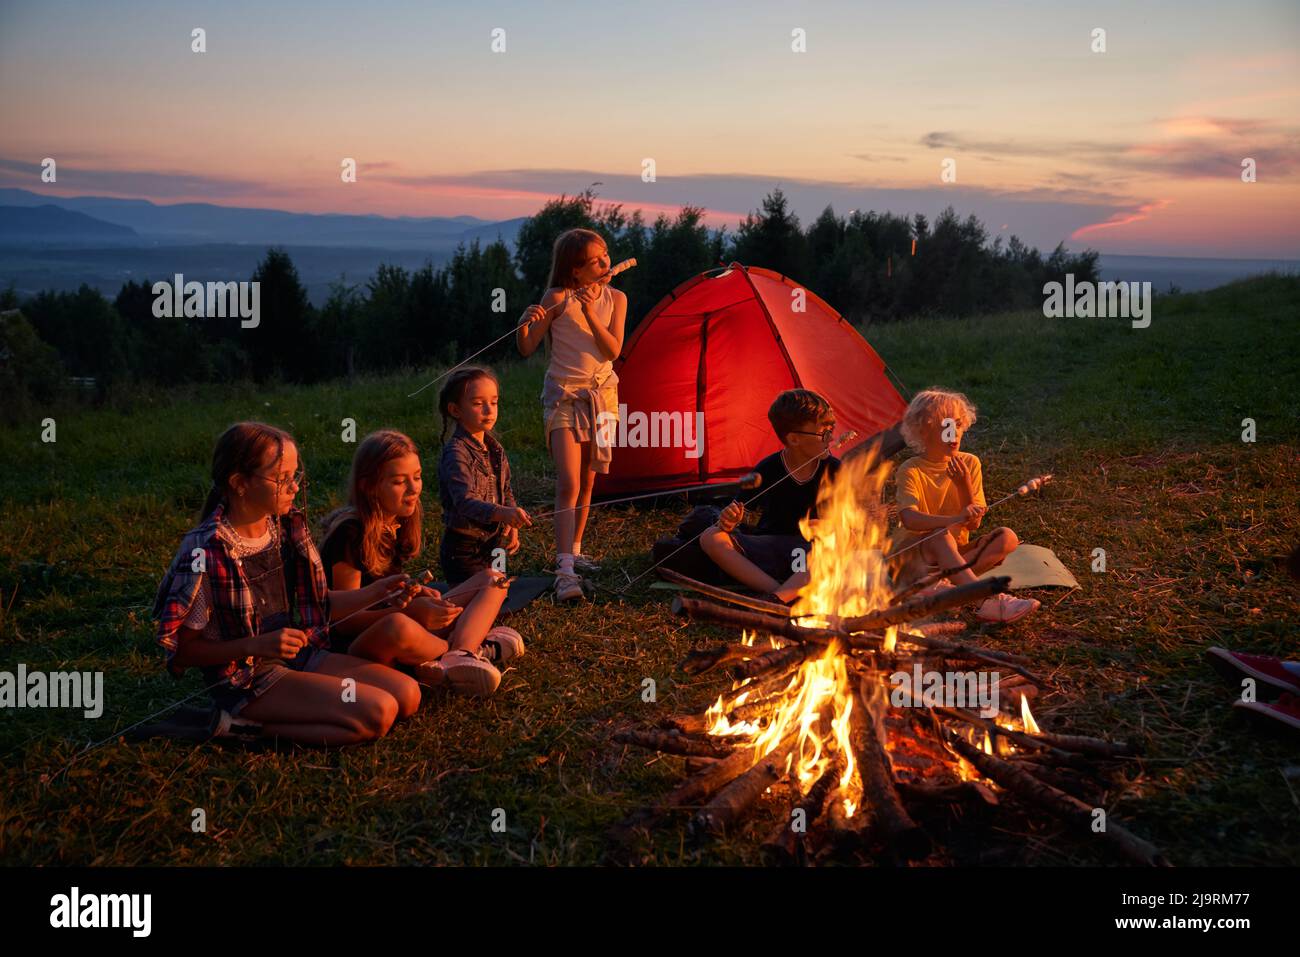 Seitenansicht einer Gruppe von Kindern, die auf dem Campingplatz in den Bergen essen. Sechs Kinder beim Abendessen, Camping in der Nähe des Kamins mit rotem Zelt auf dem Hintergrund. Konzept des Reisens. Stockfoto